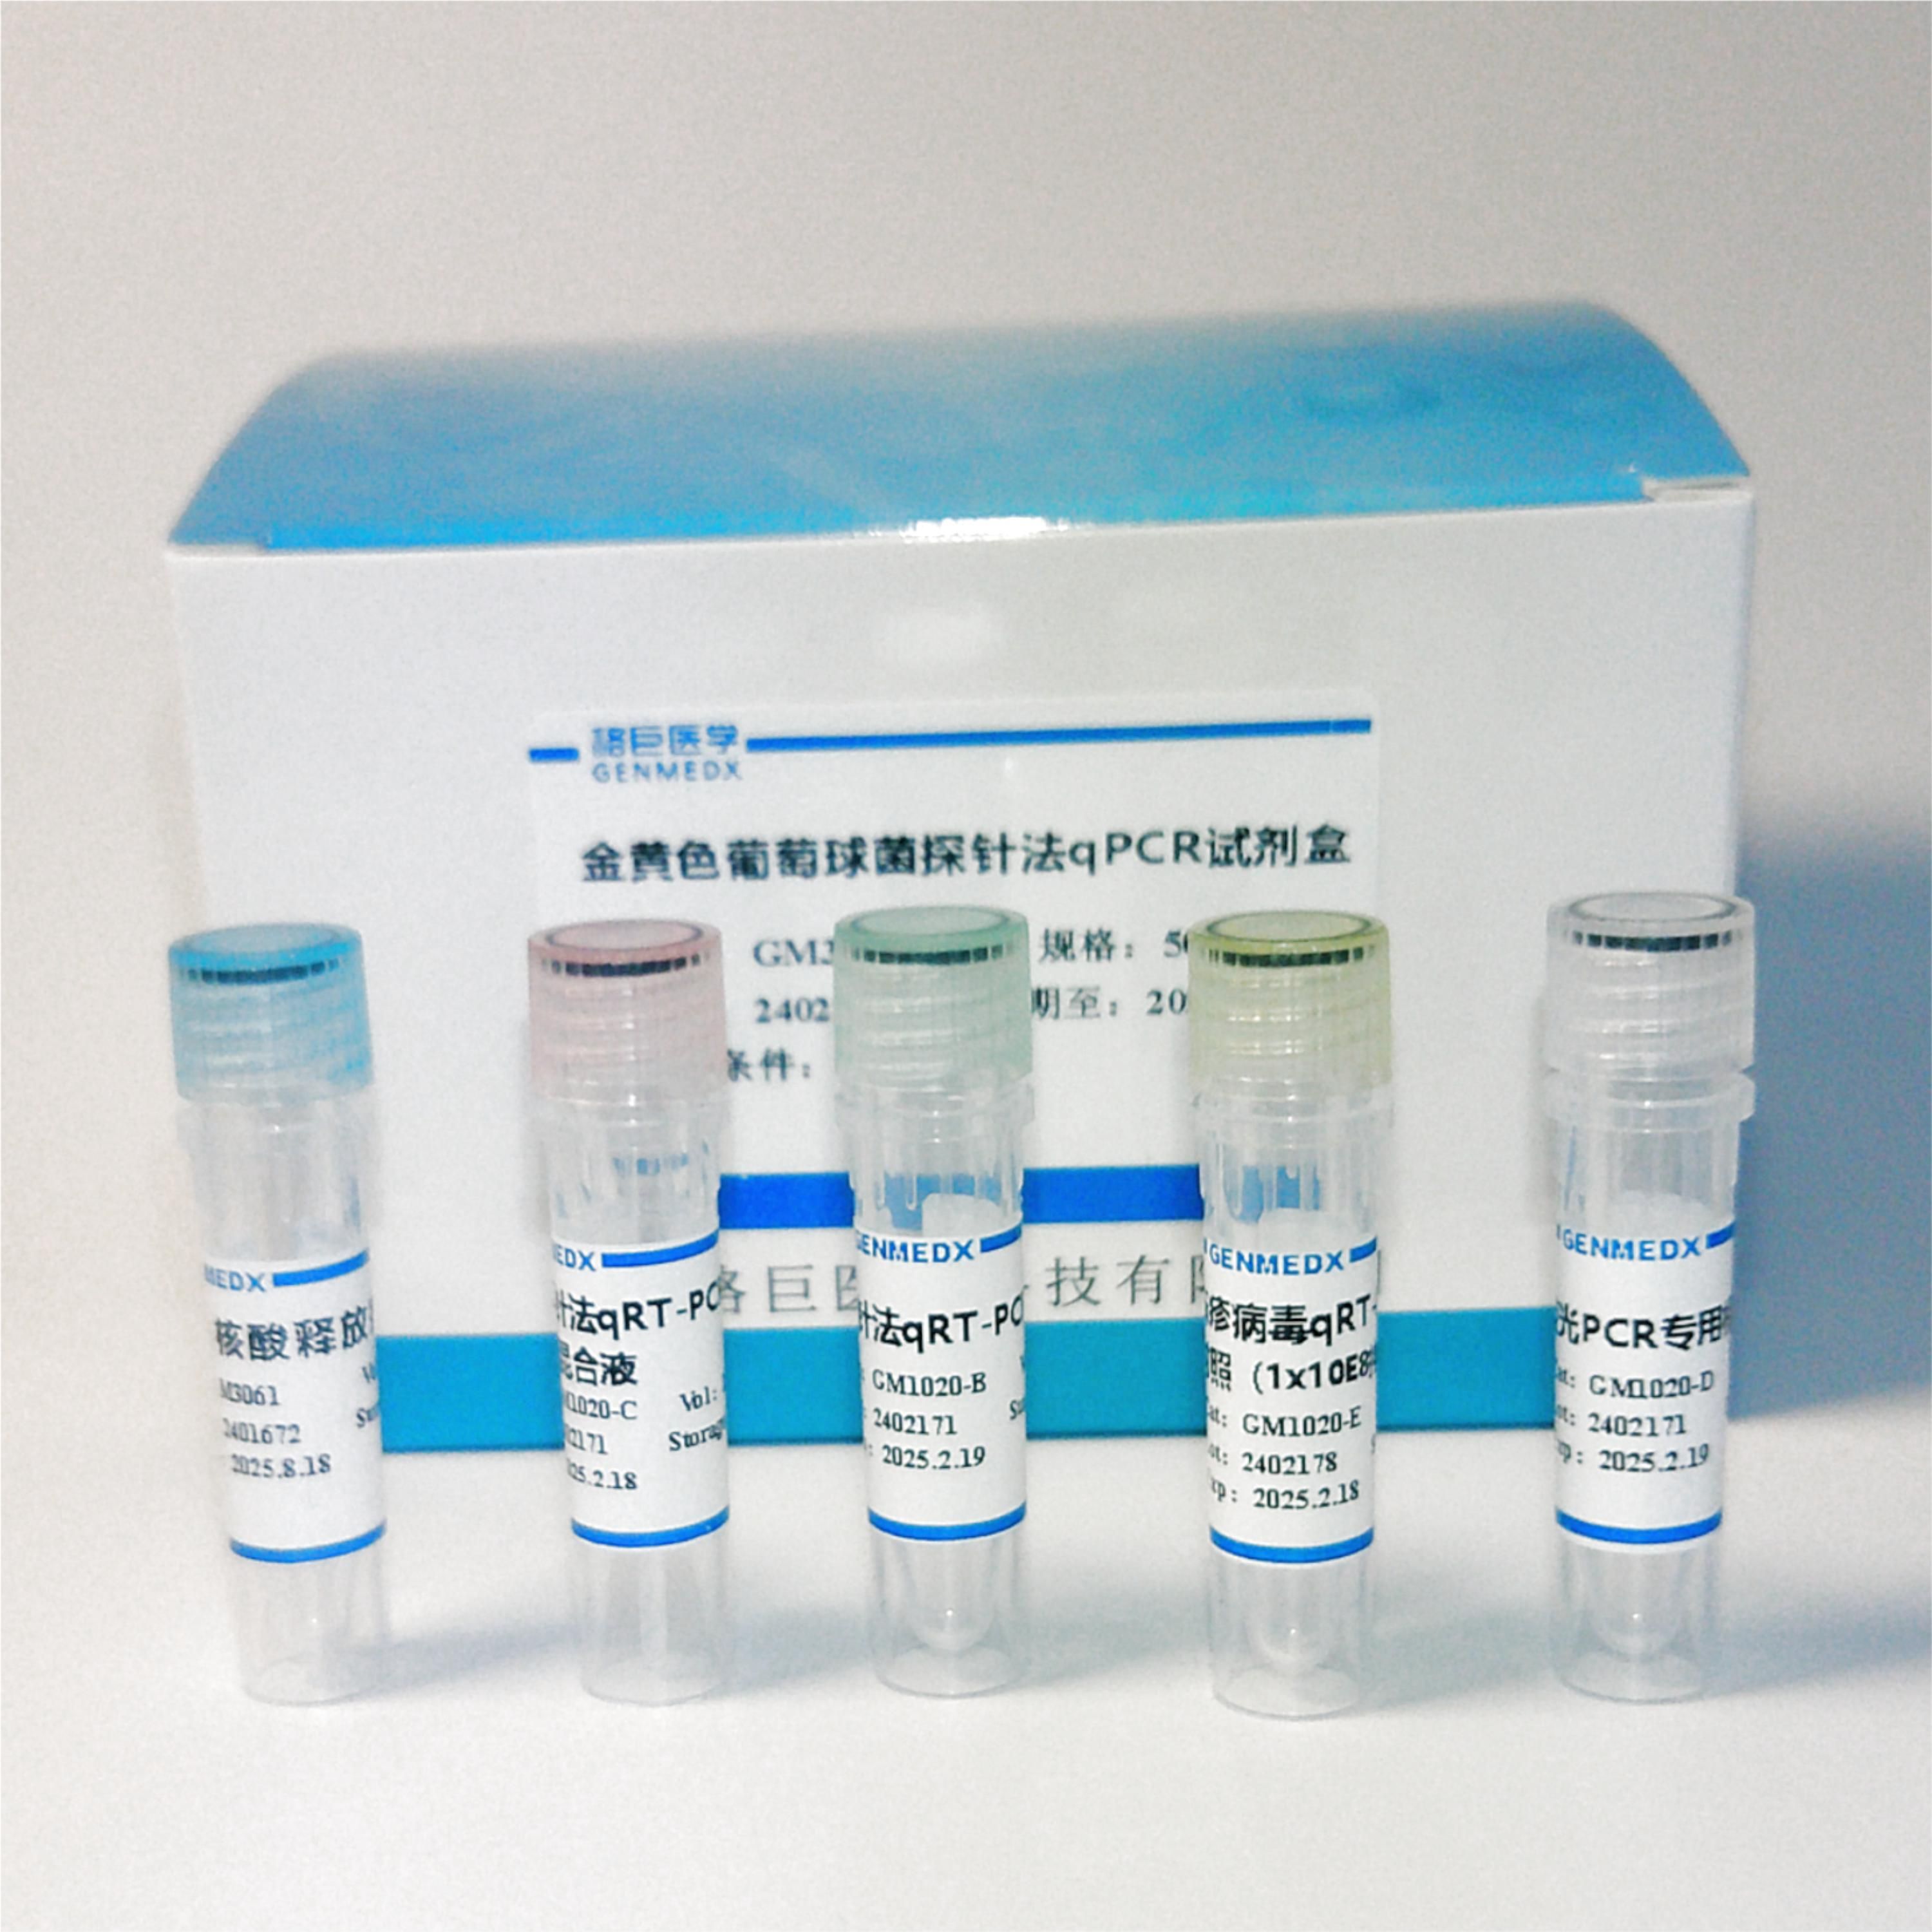 肠致病性大肠杆菌(EPEC)探针法荧光定量PCR试剂盒